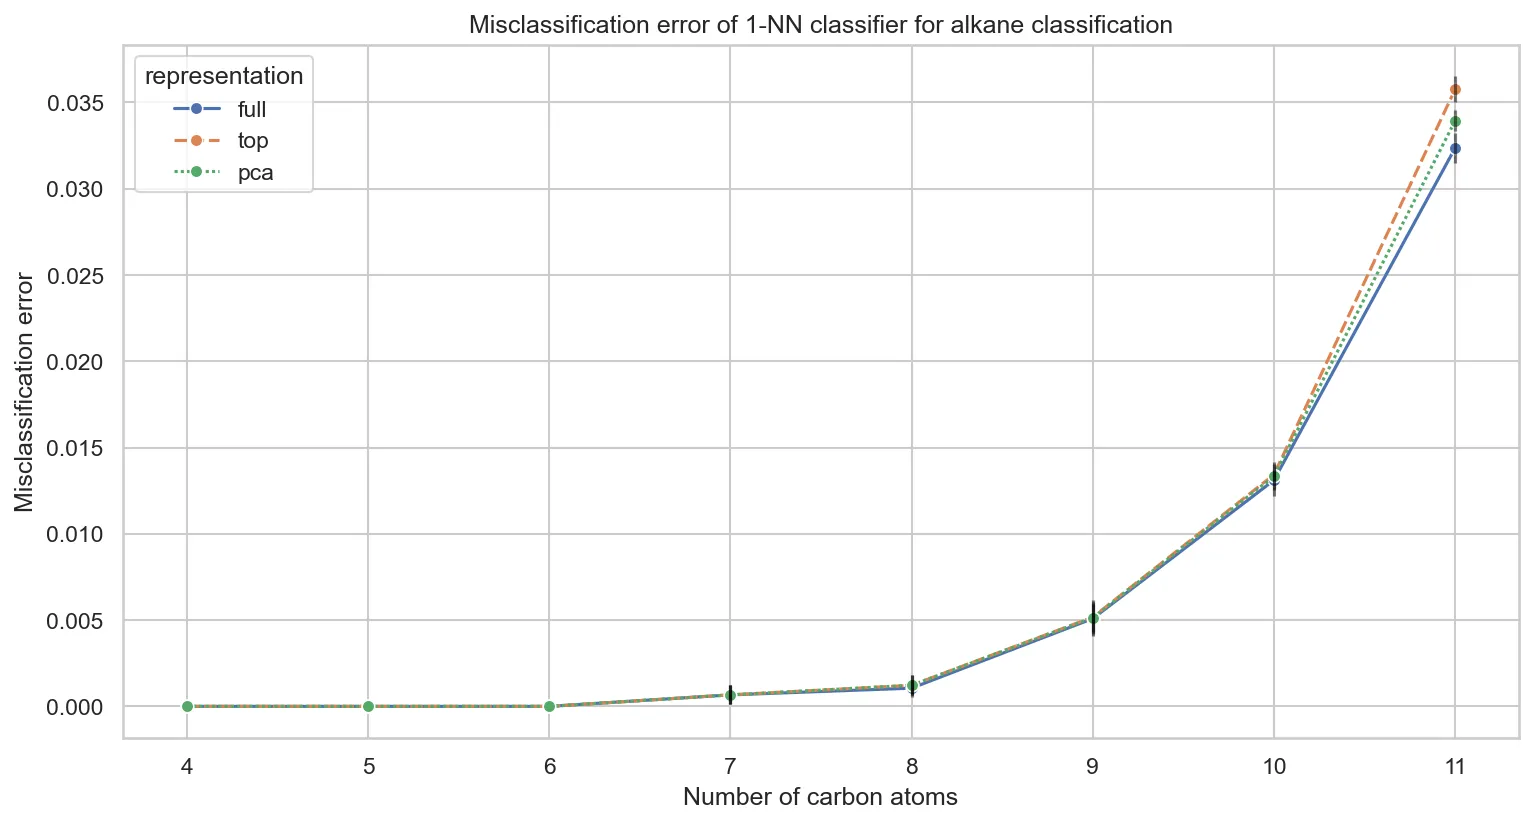 Misclassification error of 1-NN classifier for alkane classification